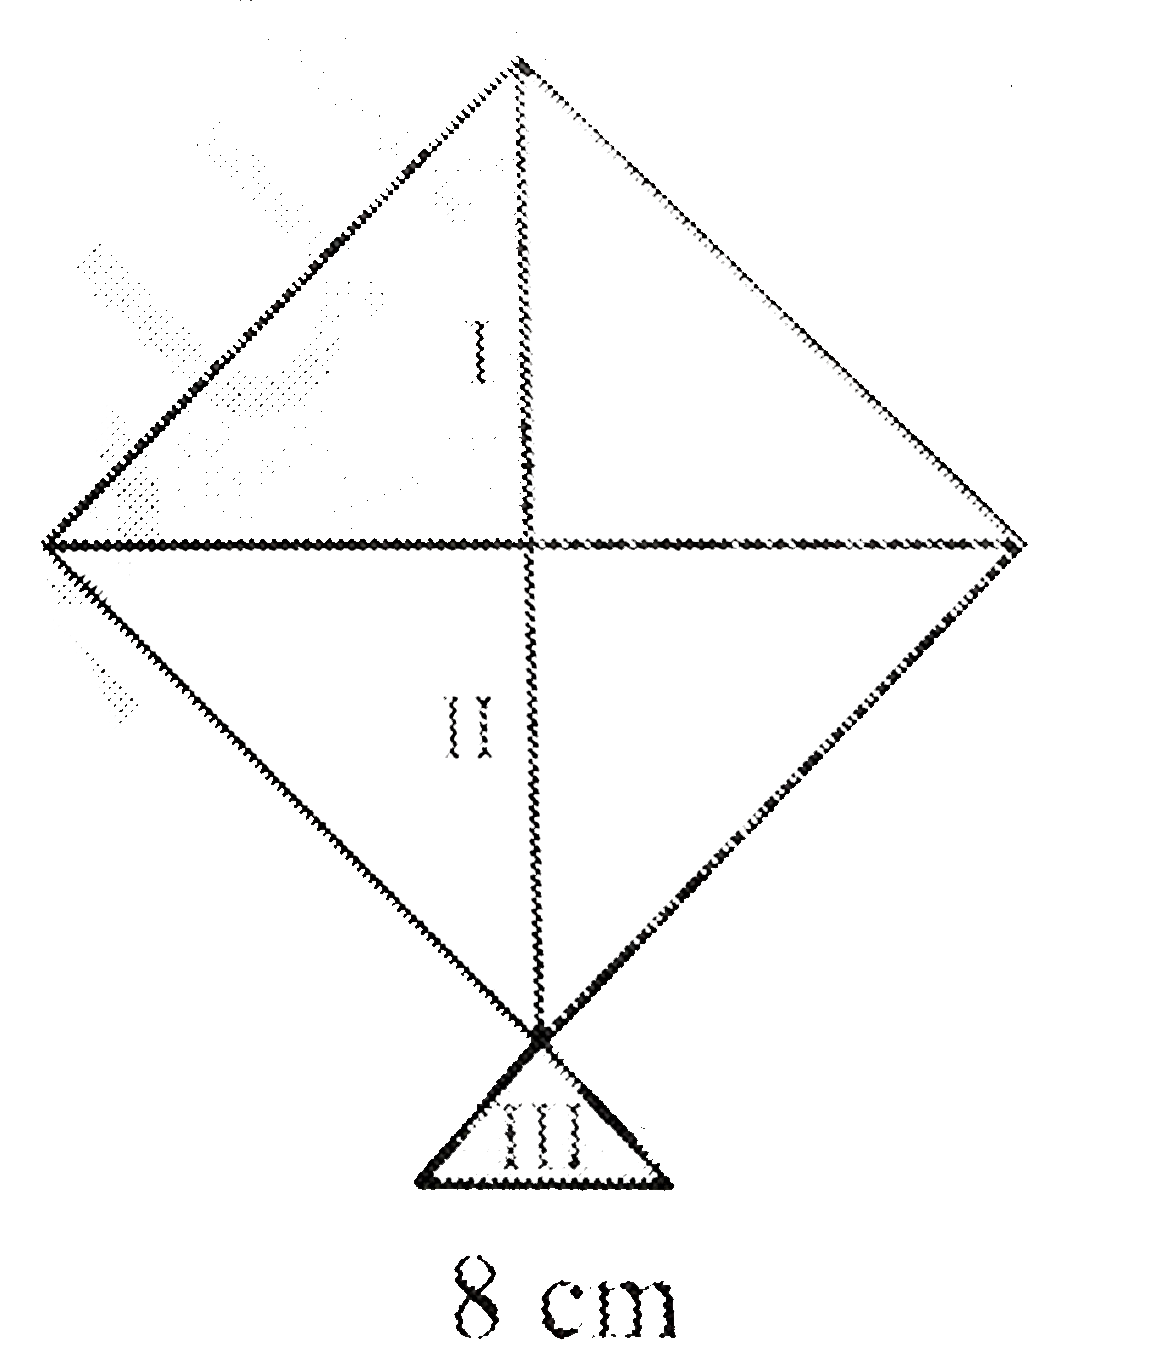 एक पतंग गईं भिन्न -भिन्न शेडों (shades)  के कागजों से बनी है । इन्हे आकृति 12.17  में I,II  और III  से दर्शाया गया है । पतंग का ऊपरी भाग 32 cm  विकर्ण का एक वर्ग है और निचला भाग 6cm, 6 cm  और 8 cm  भुजाओं का भाग समद्विबाहु  त्रिभुज है । ज्ञात कीजिये की प्रत्येक शेड का कितना कागज प्रयुक्त किया है ।